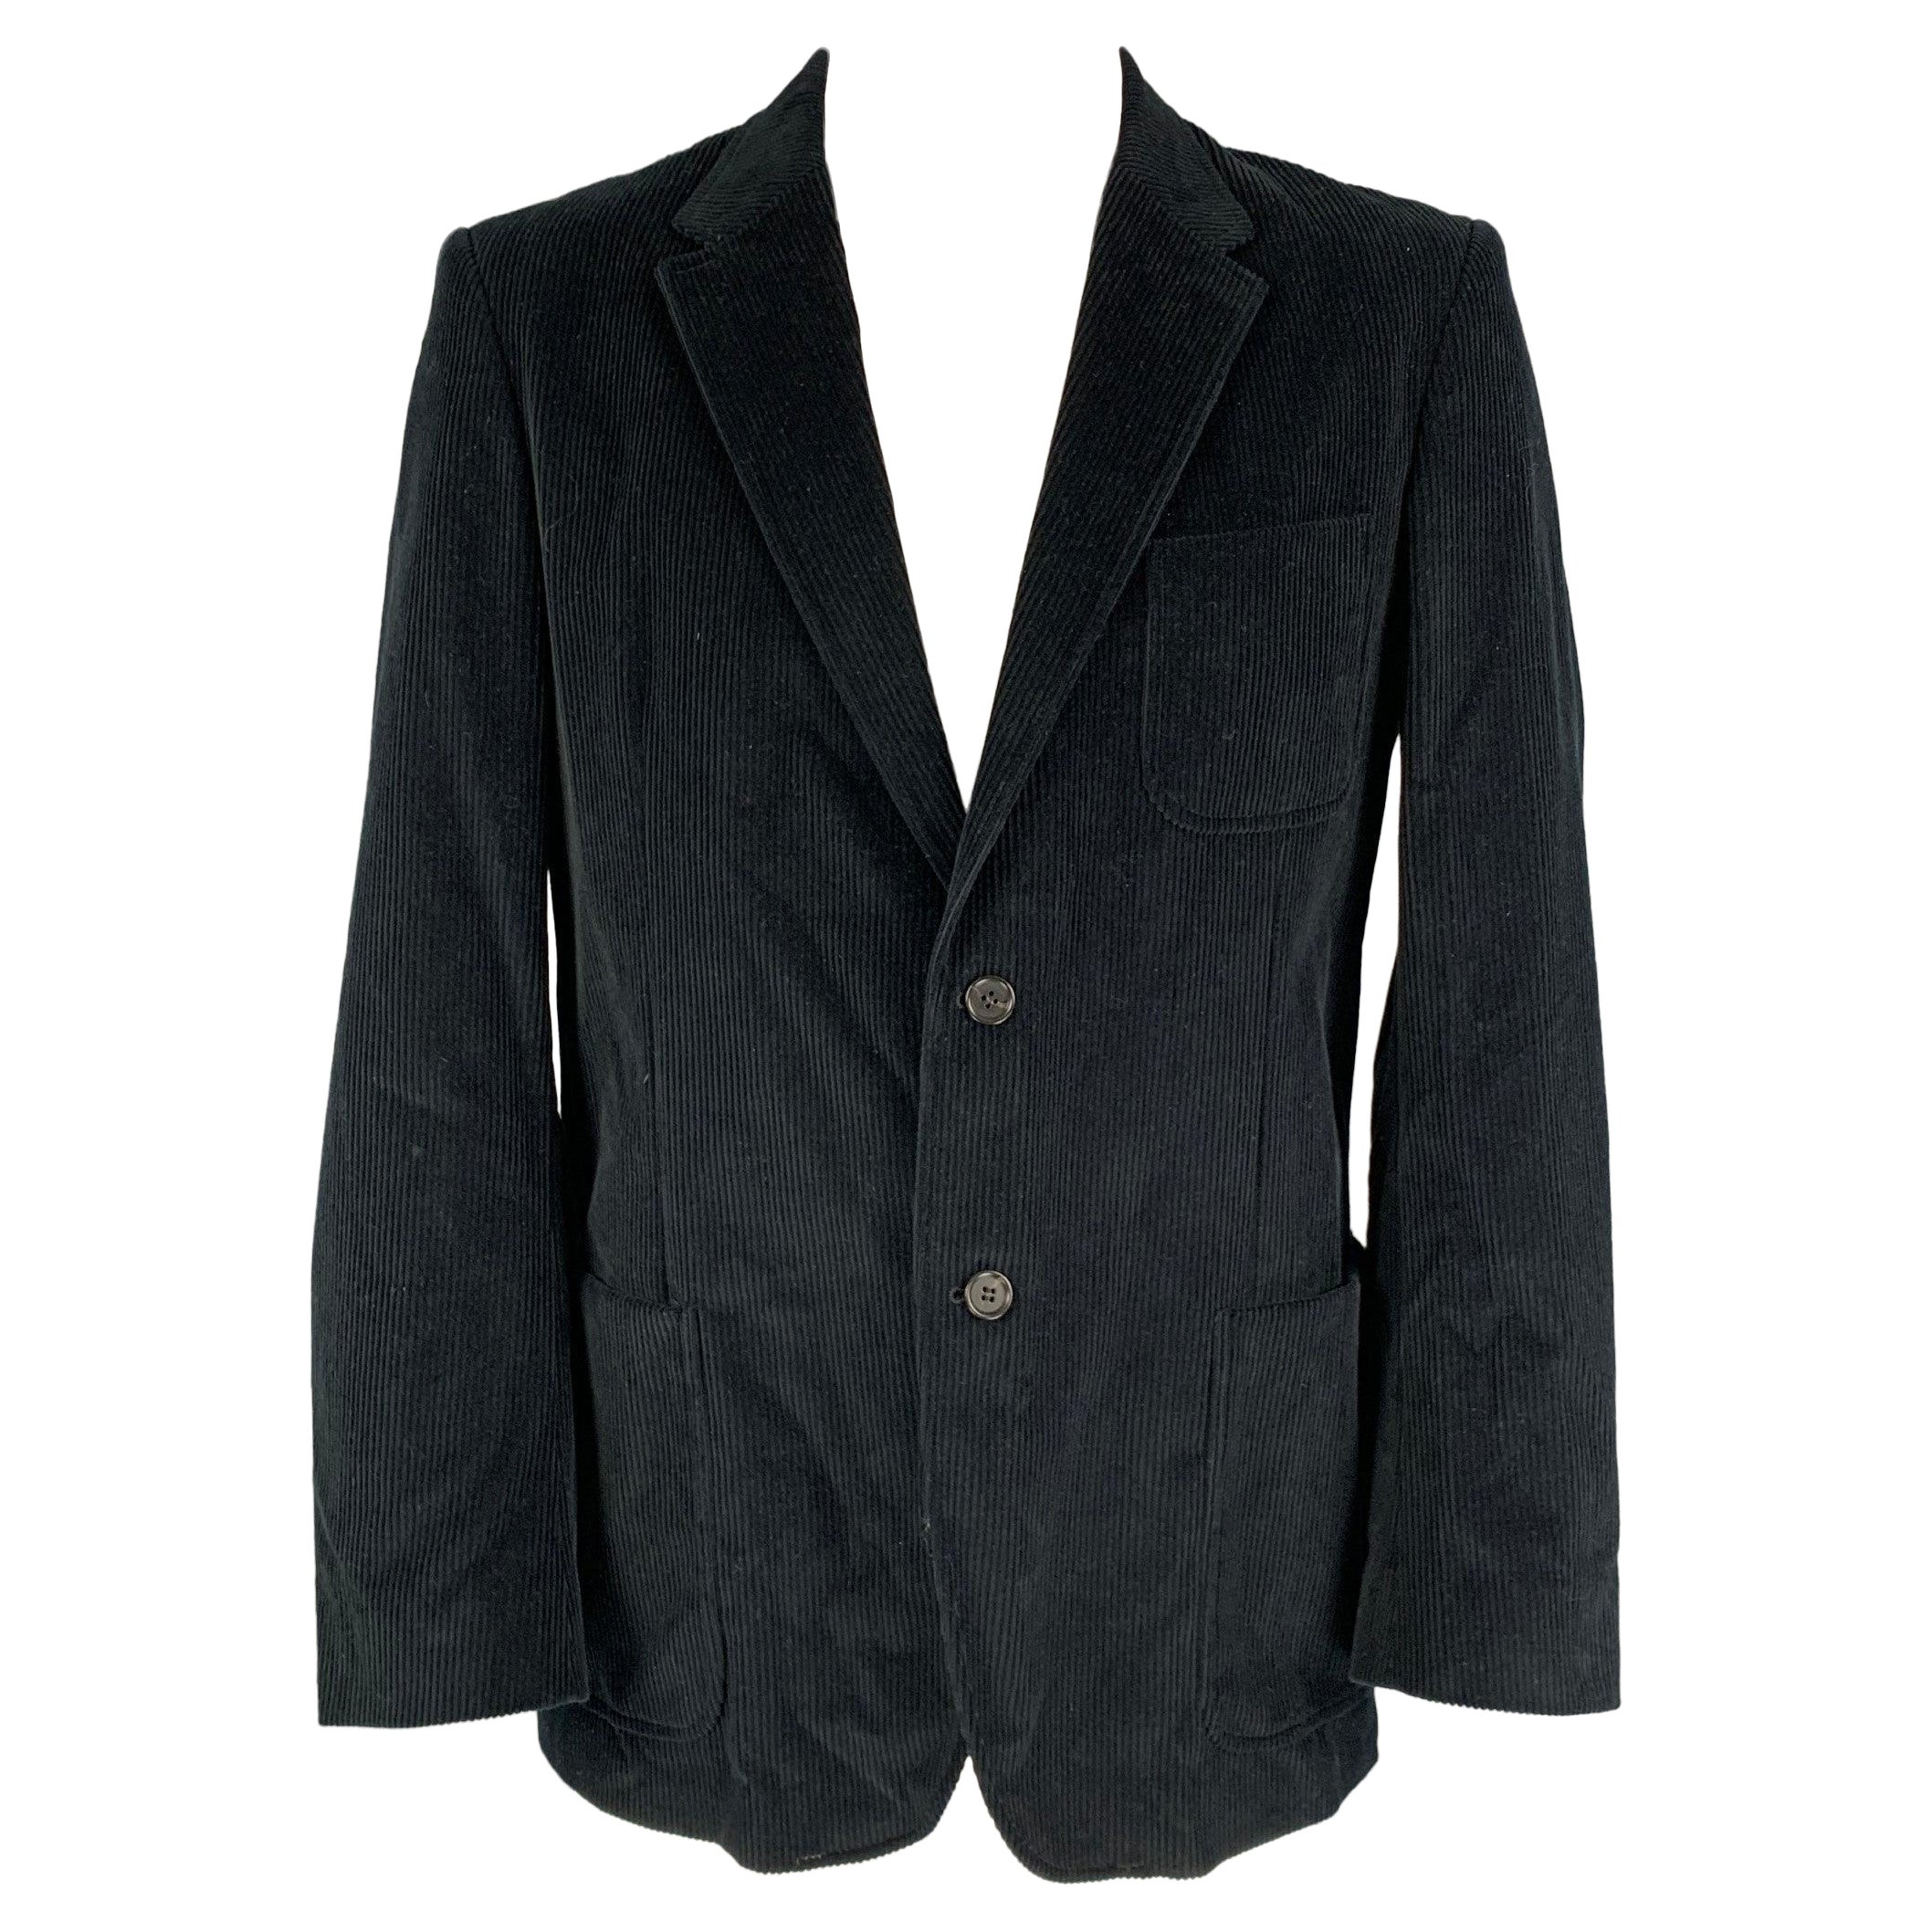 CALVIN KLEIN COLLECTION Size 44 Black Corduroy Cotton Sport Coat For Sale